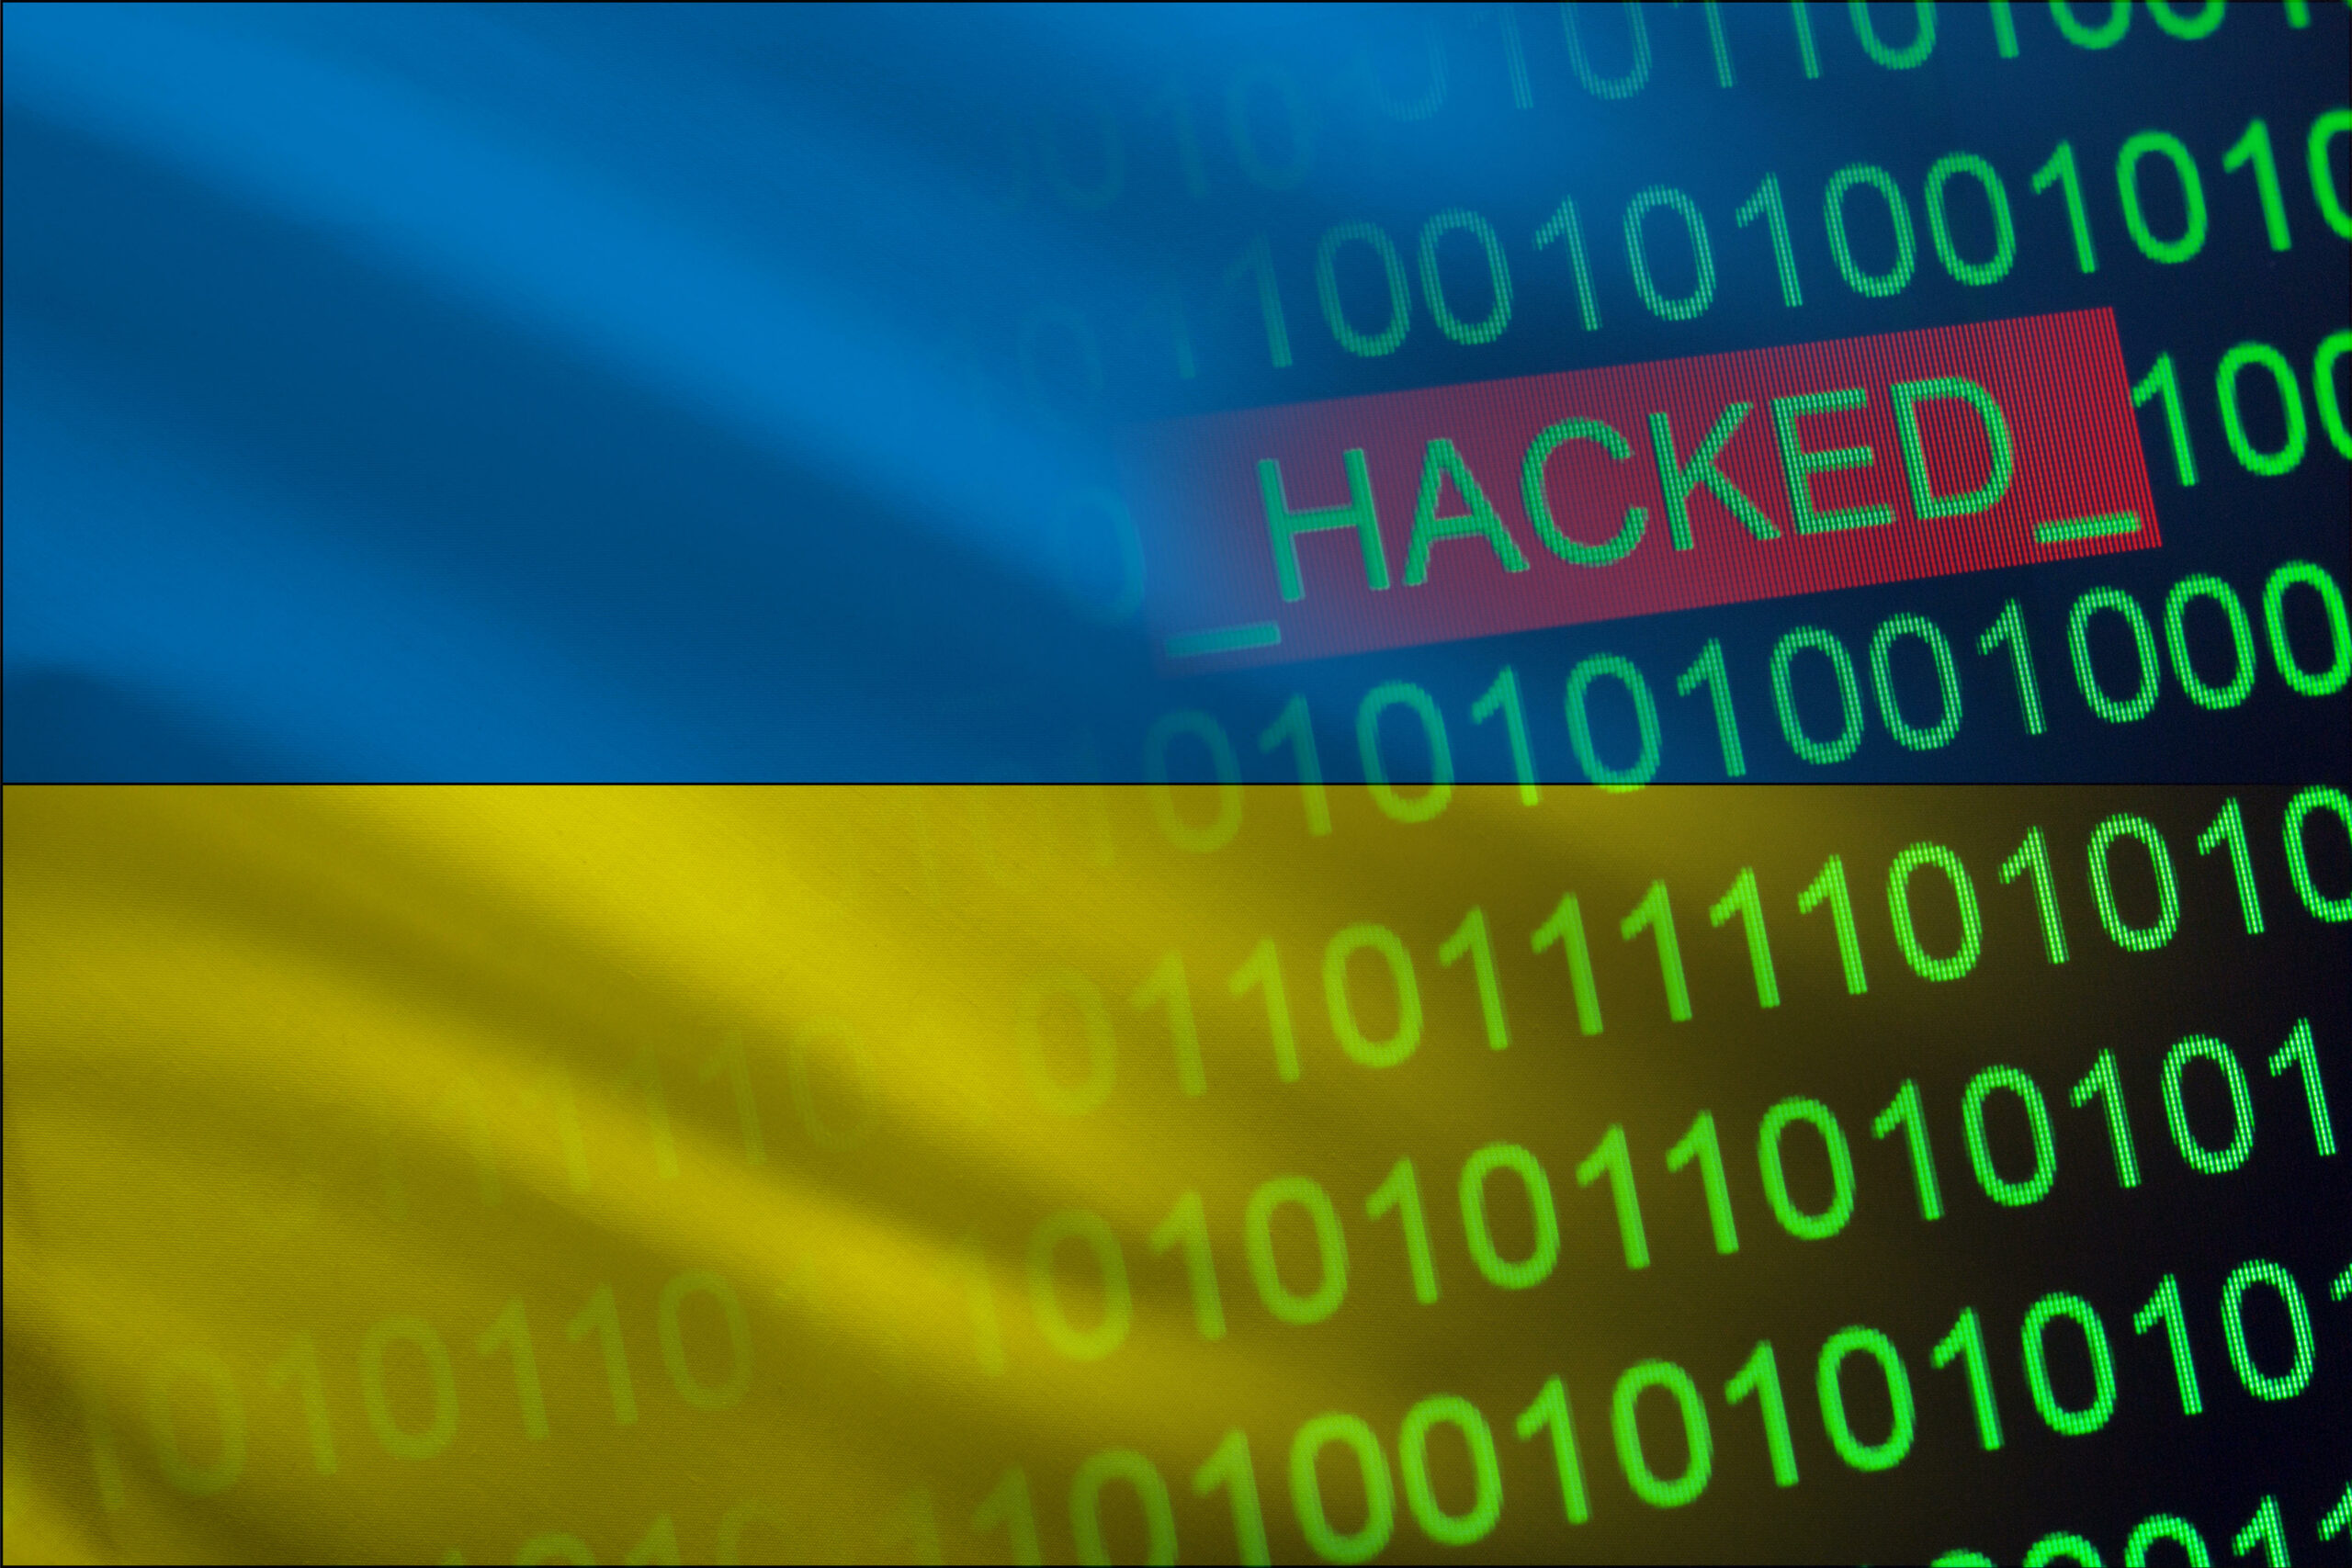 Una serie di attacchi informatici ha colpito organizzazioni di infrastrutture critiche ucraine